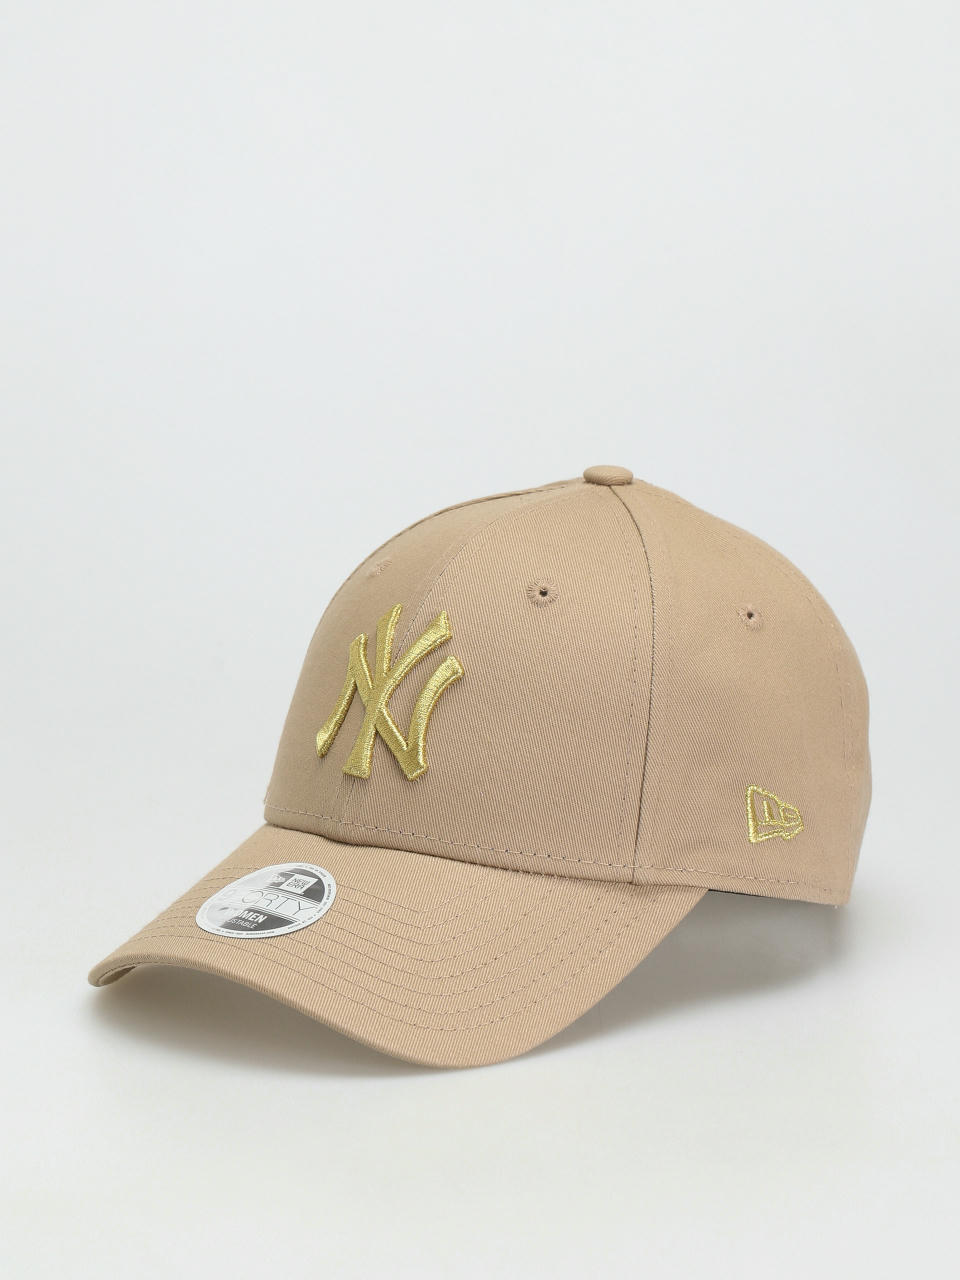 New Era 9Twenty Unisex Cap - New York Yankees camel beige 